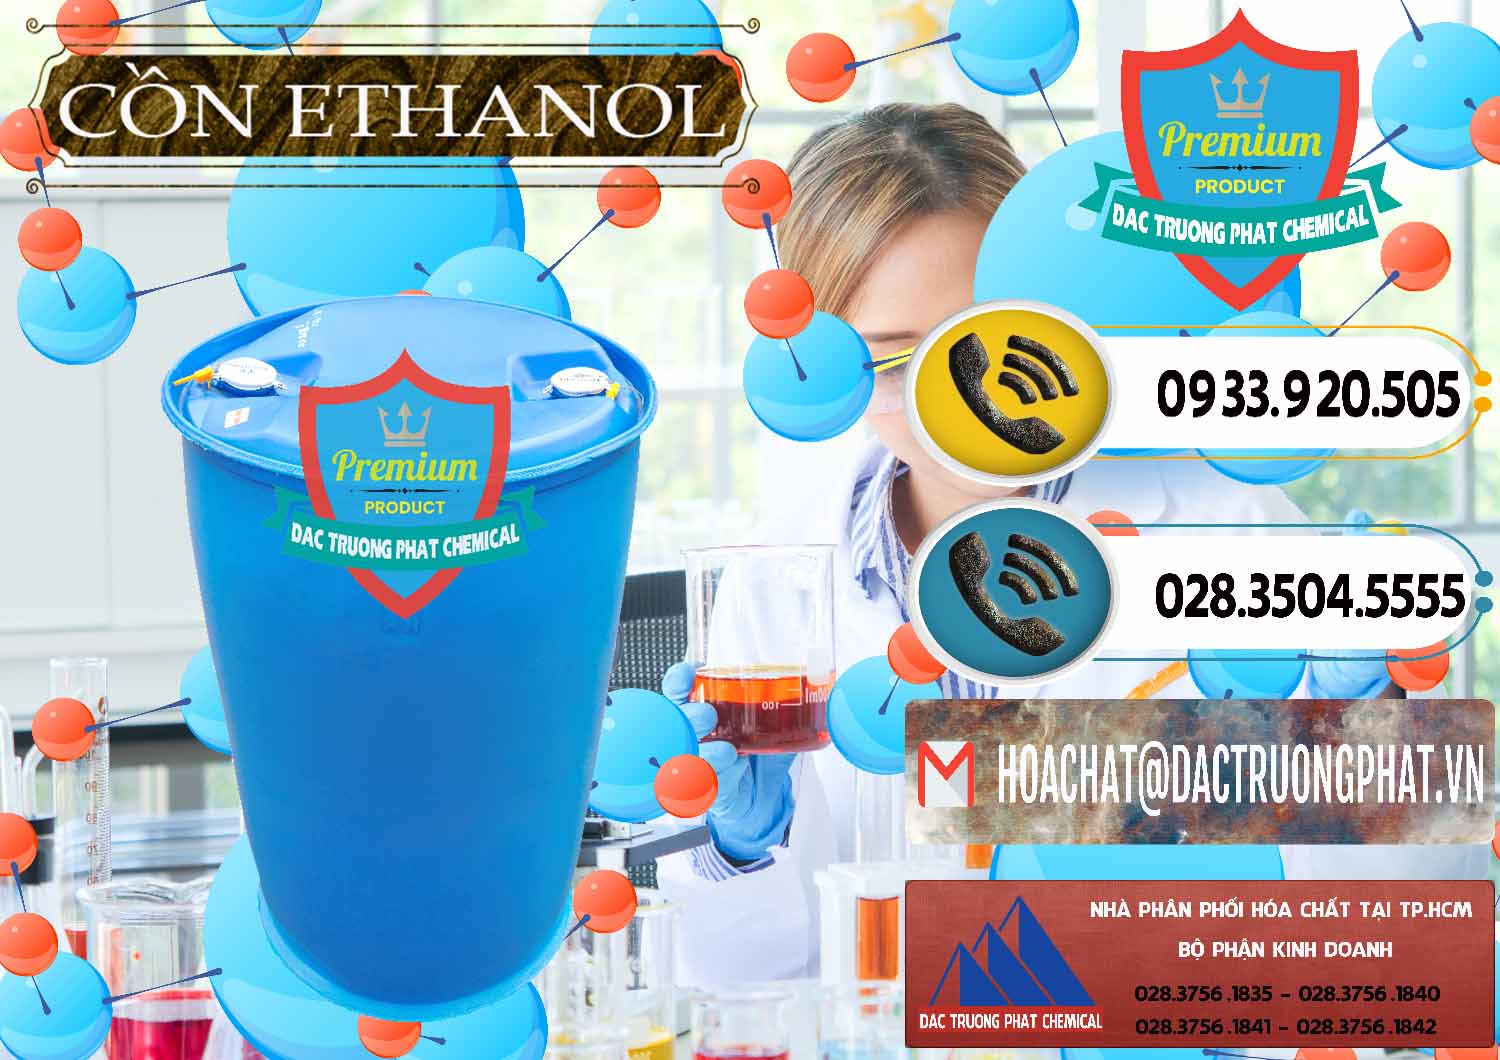 Nơi chuyên phân phối và bán Cồn Ethanol - C2H5OH Thực Phẩm Food Grade Việt Nam - 0330 - Nhà cung cấp ( phân phối ) hóa chất tại TP.HCM - hoachatdetnhuom.vn